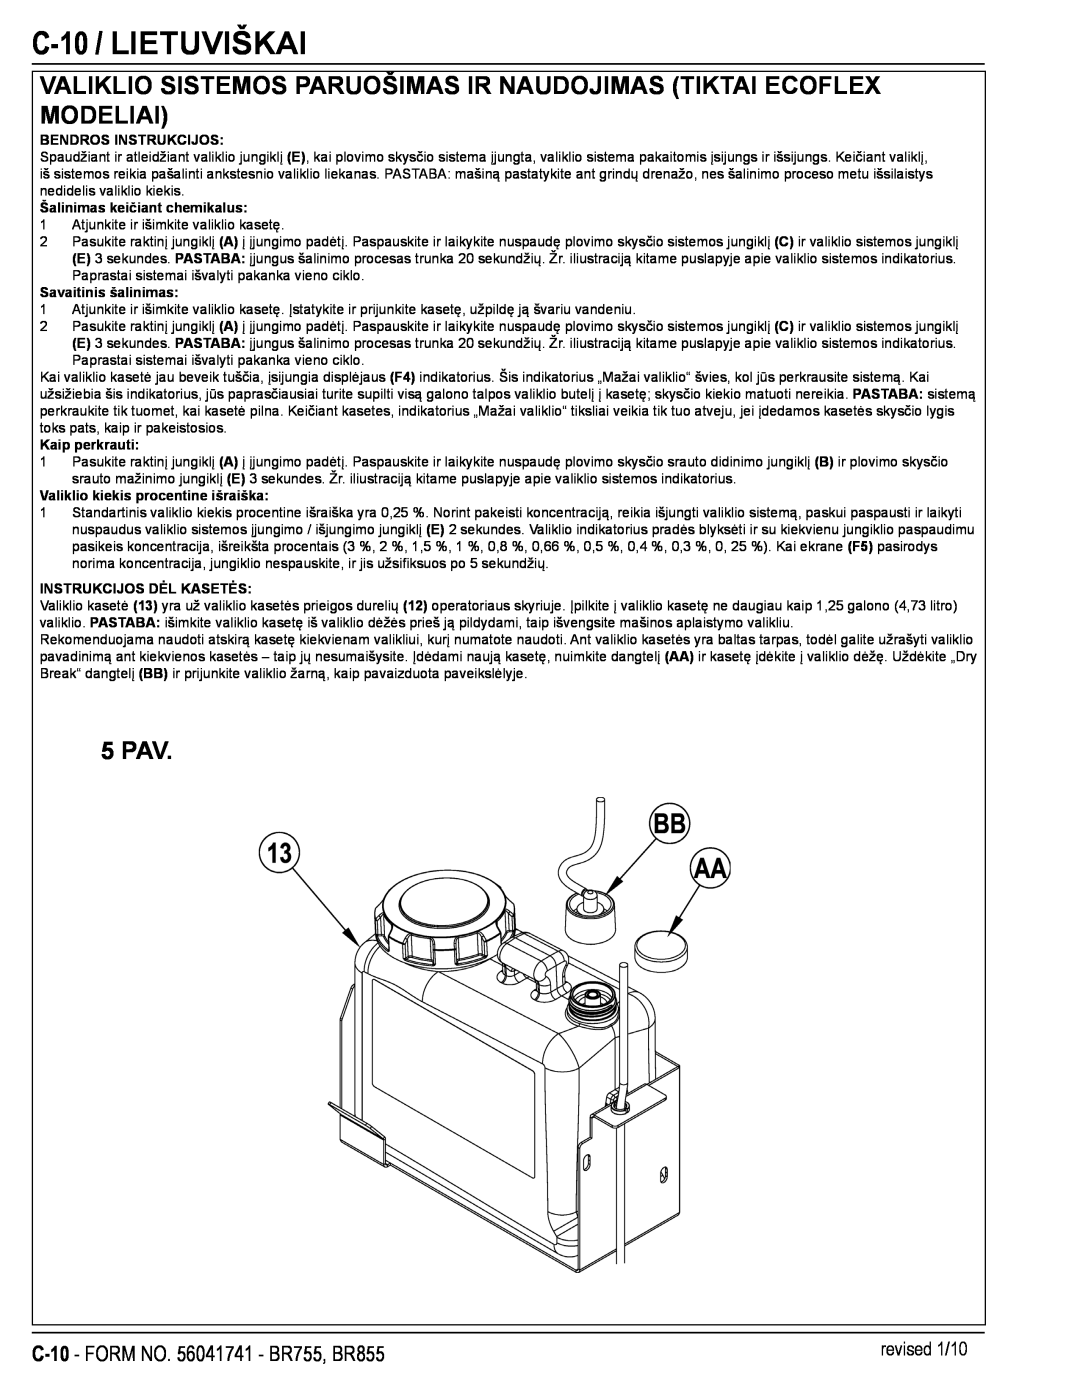 Nilfisk-Advance America BR755 manual C-10 / LIETUVIŠKAI, Valiklio Sistemos Paruošimas Ir Naudojimas Tiktai Ecoflex Modeliai 